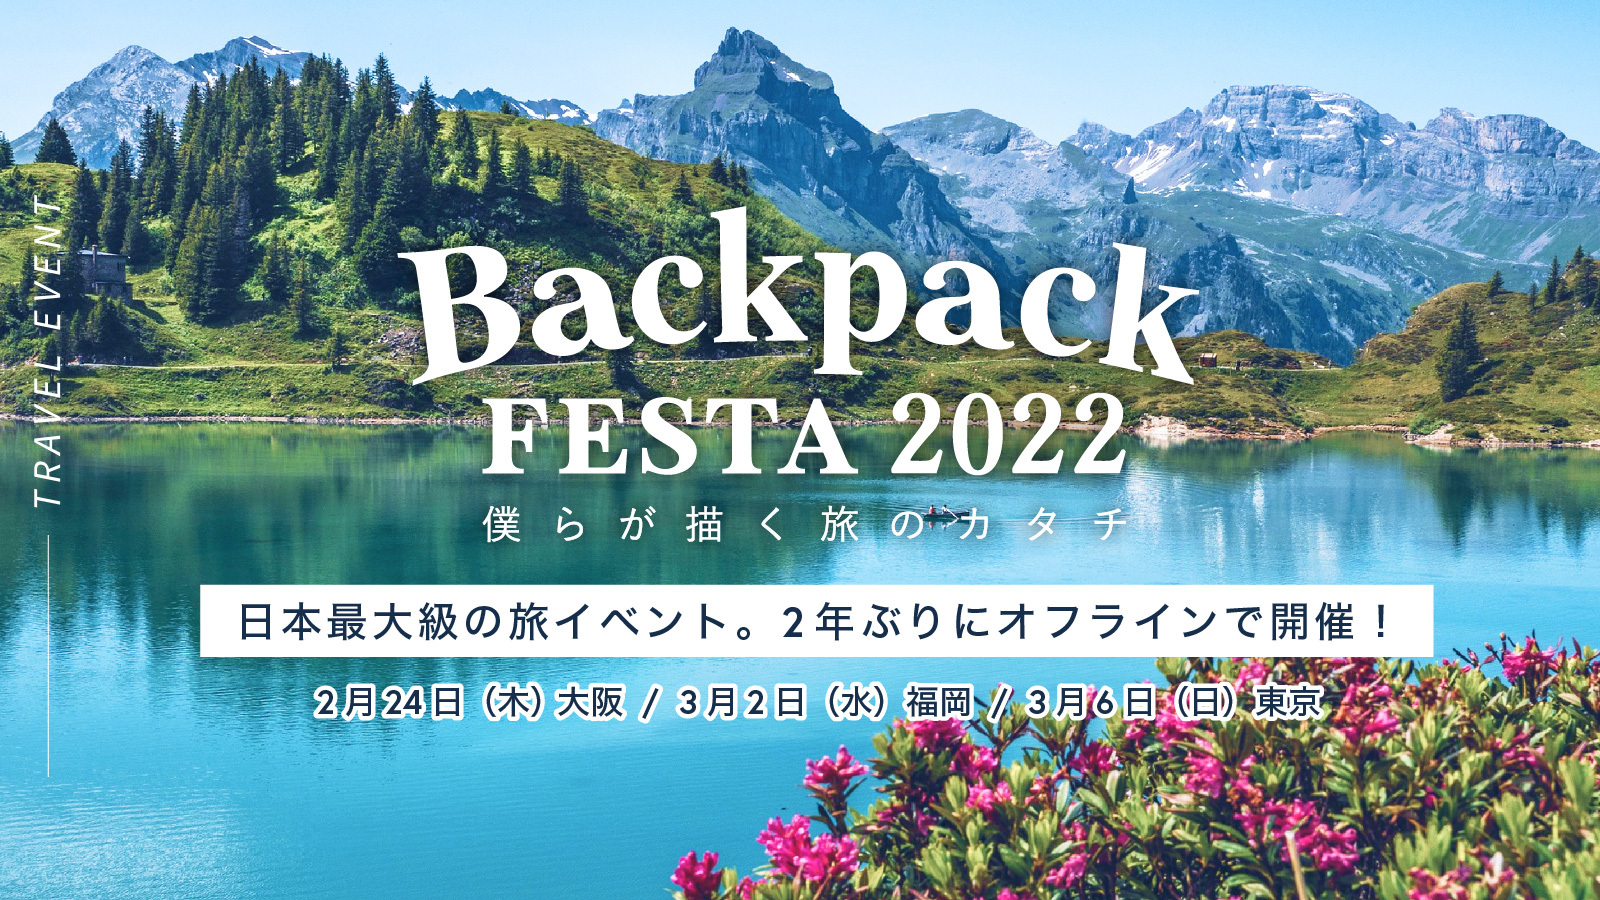 日本最大級の旅イベントBackpackFESTA2022を全国3会場でオフライン開催します